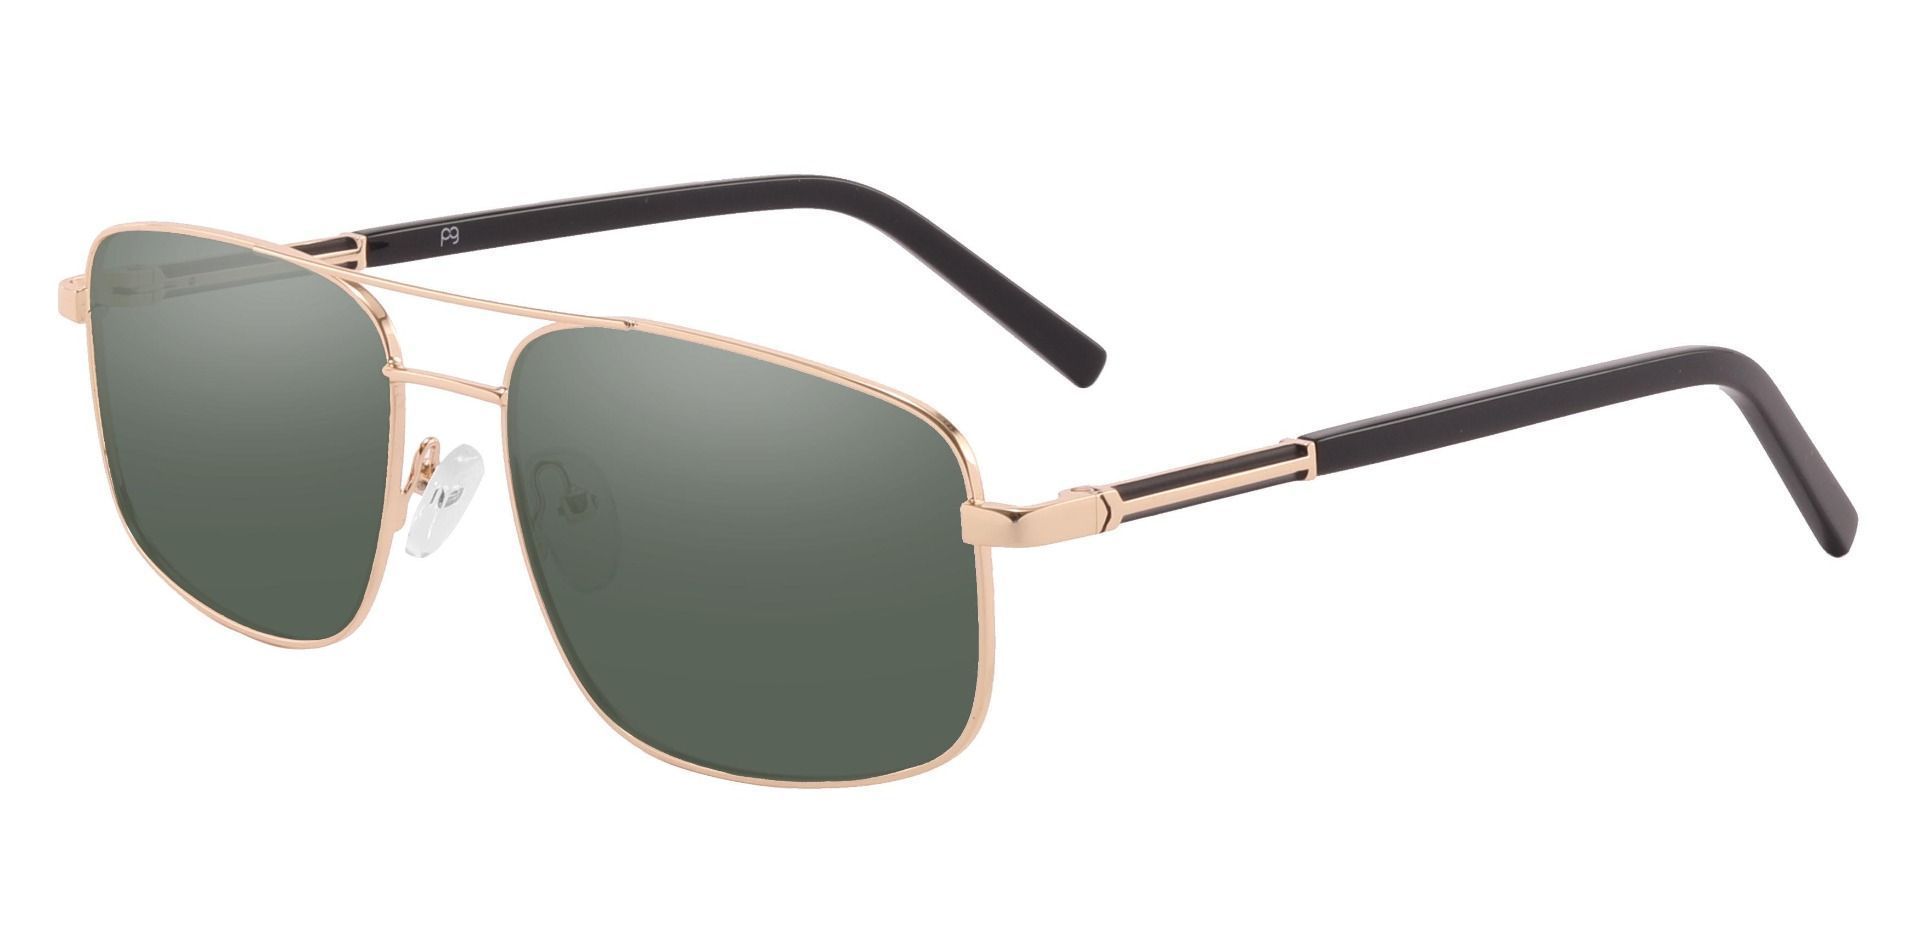 Davenport Aviator Reading Sunglasses - Gold Frame With Green Lenses